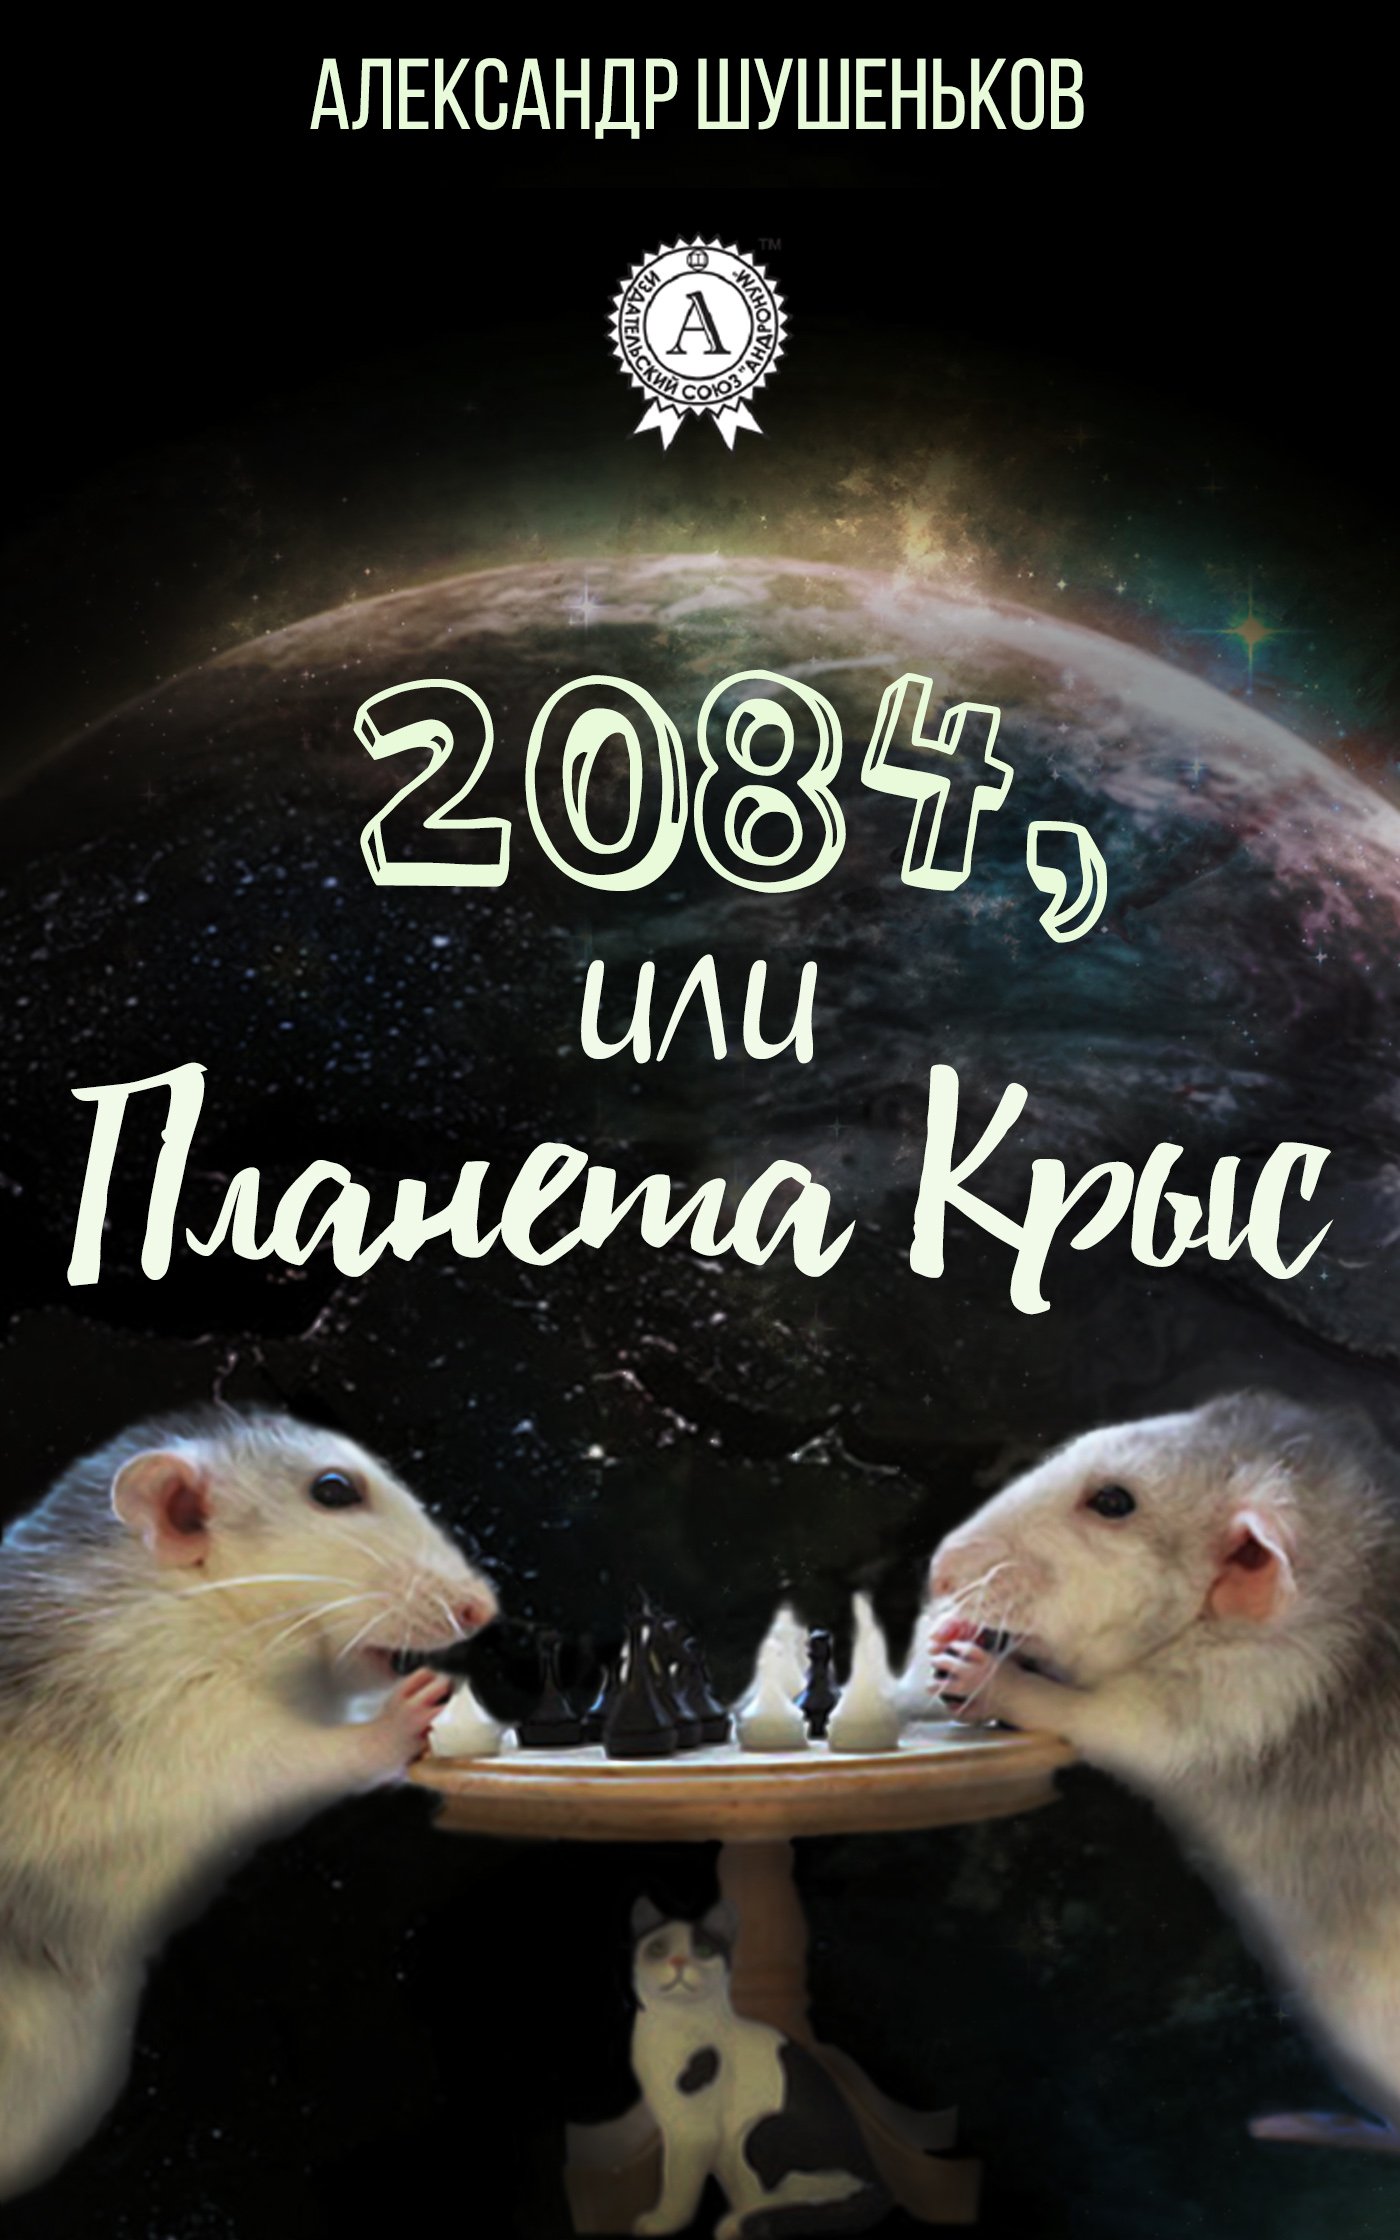 Скачать 2084, или Планета крыс - Александр Шушеньков